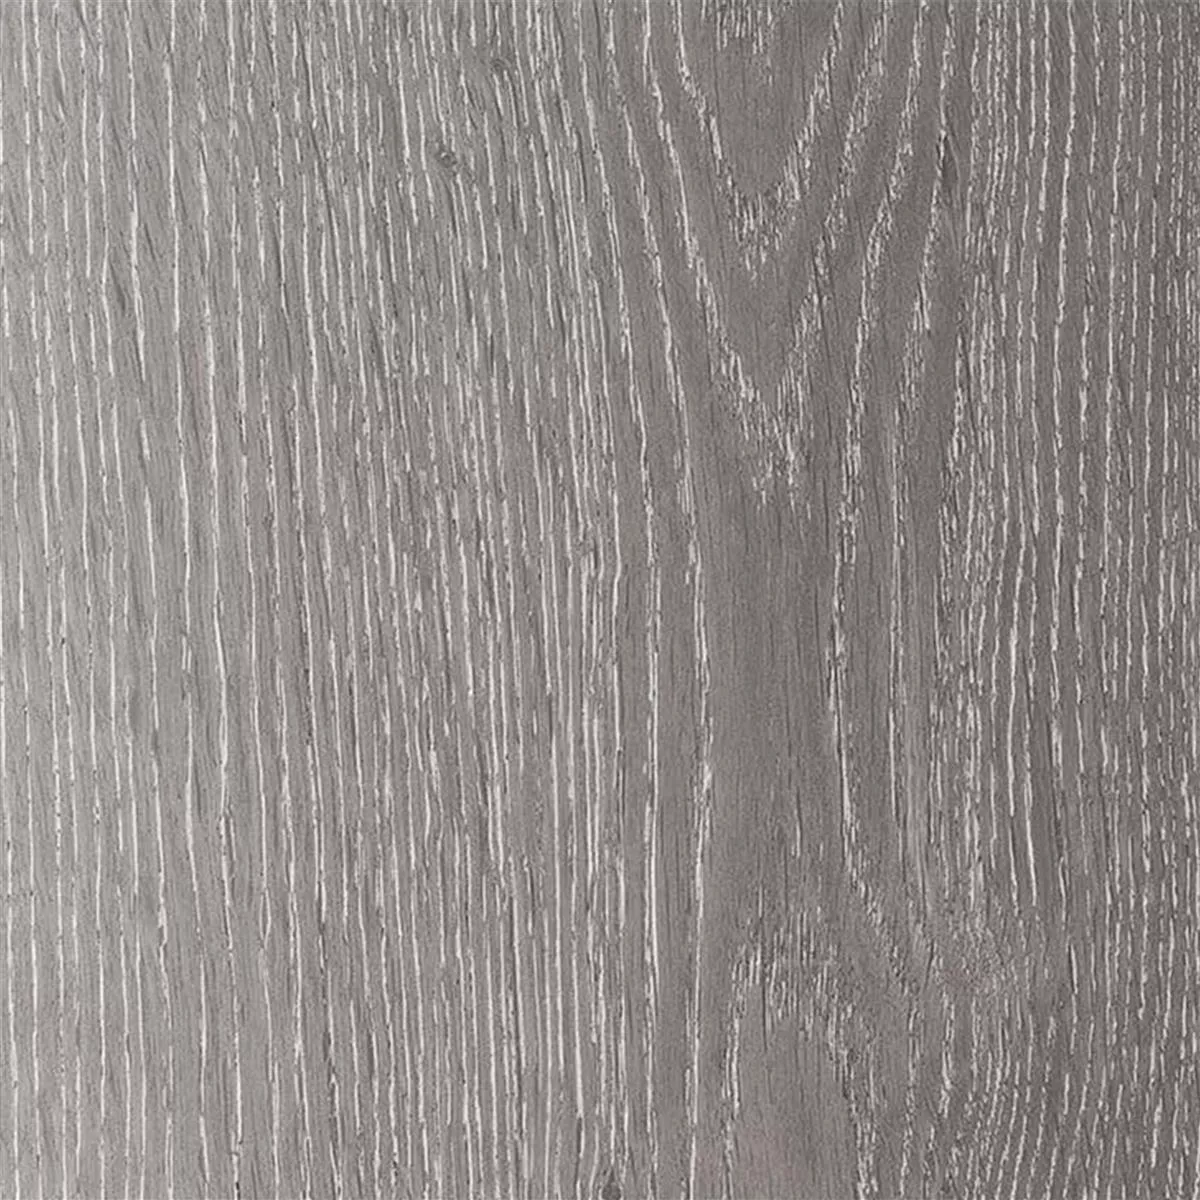 Δάπεδο Από Bινύλιο Σύστημα Κλικ Woodburn Γκρί 17,2x121cm